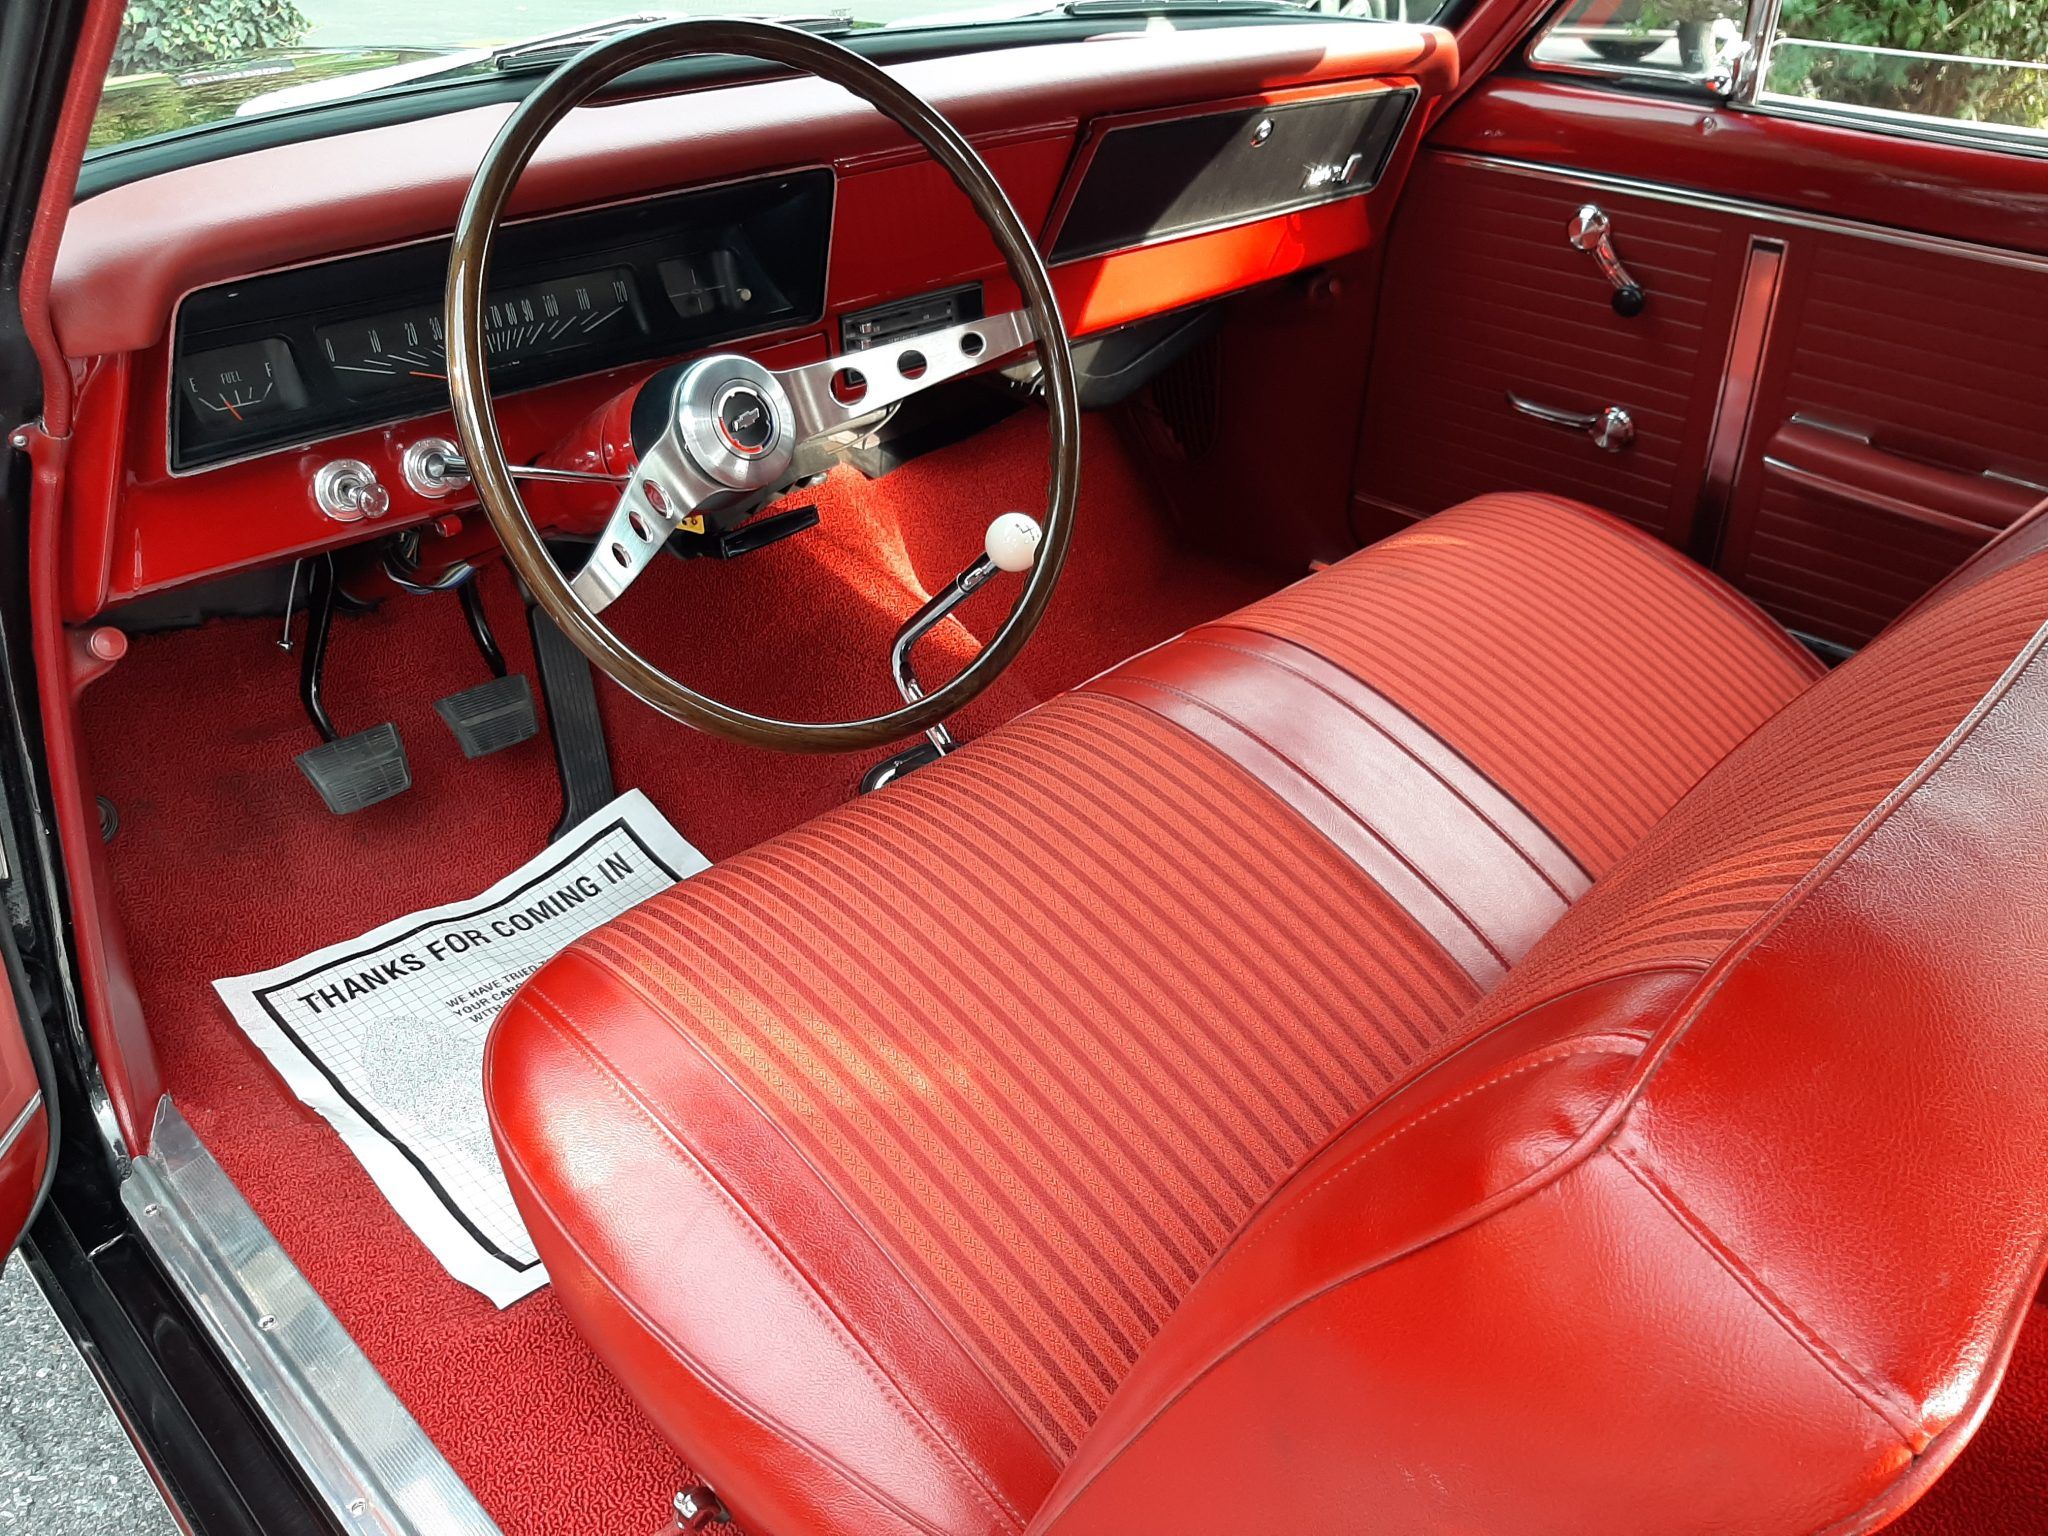 1966-1967 Chevrolet Nova (Second Generation) red interior